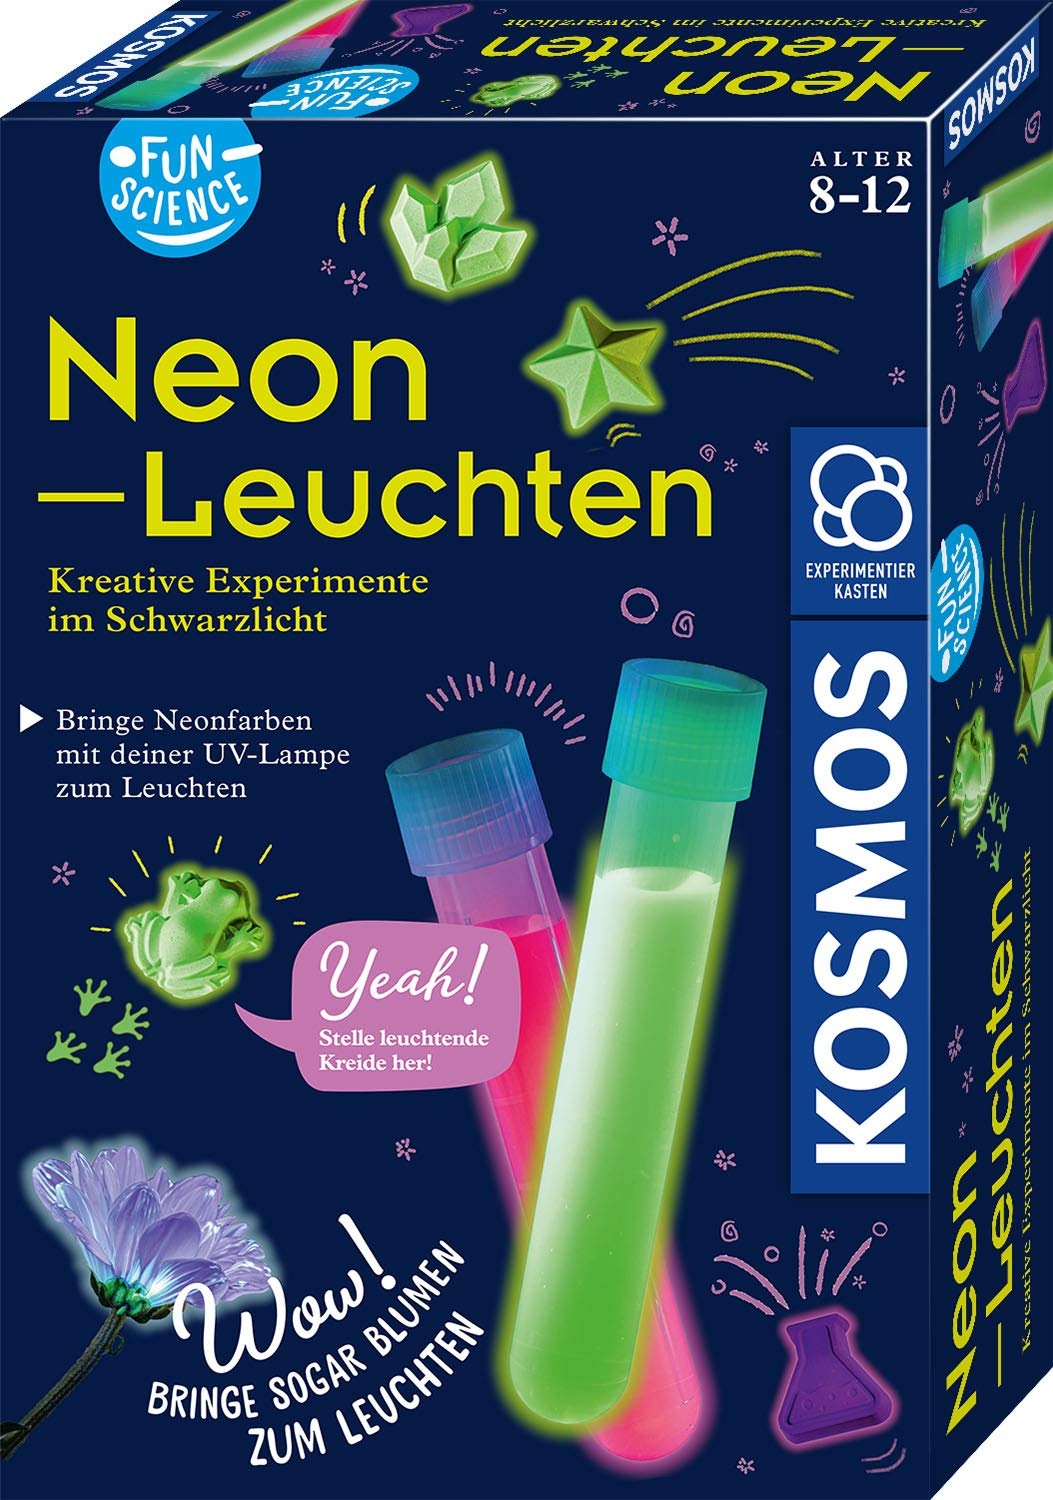 KOSMOS 654191 Fun Science - Neon-Leuchten, Kreative Experimente im Schwarzlicht, Experimentier-Set für Kinder ab 8 Jahre